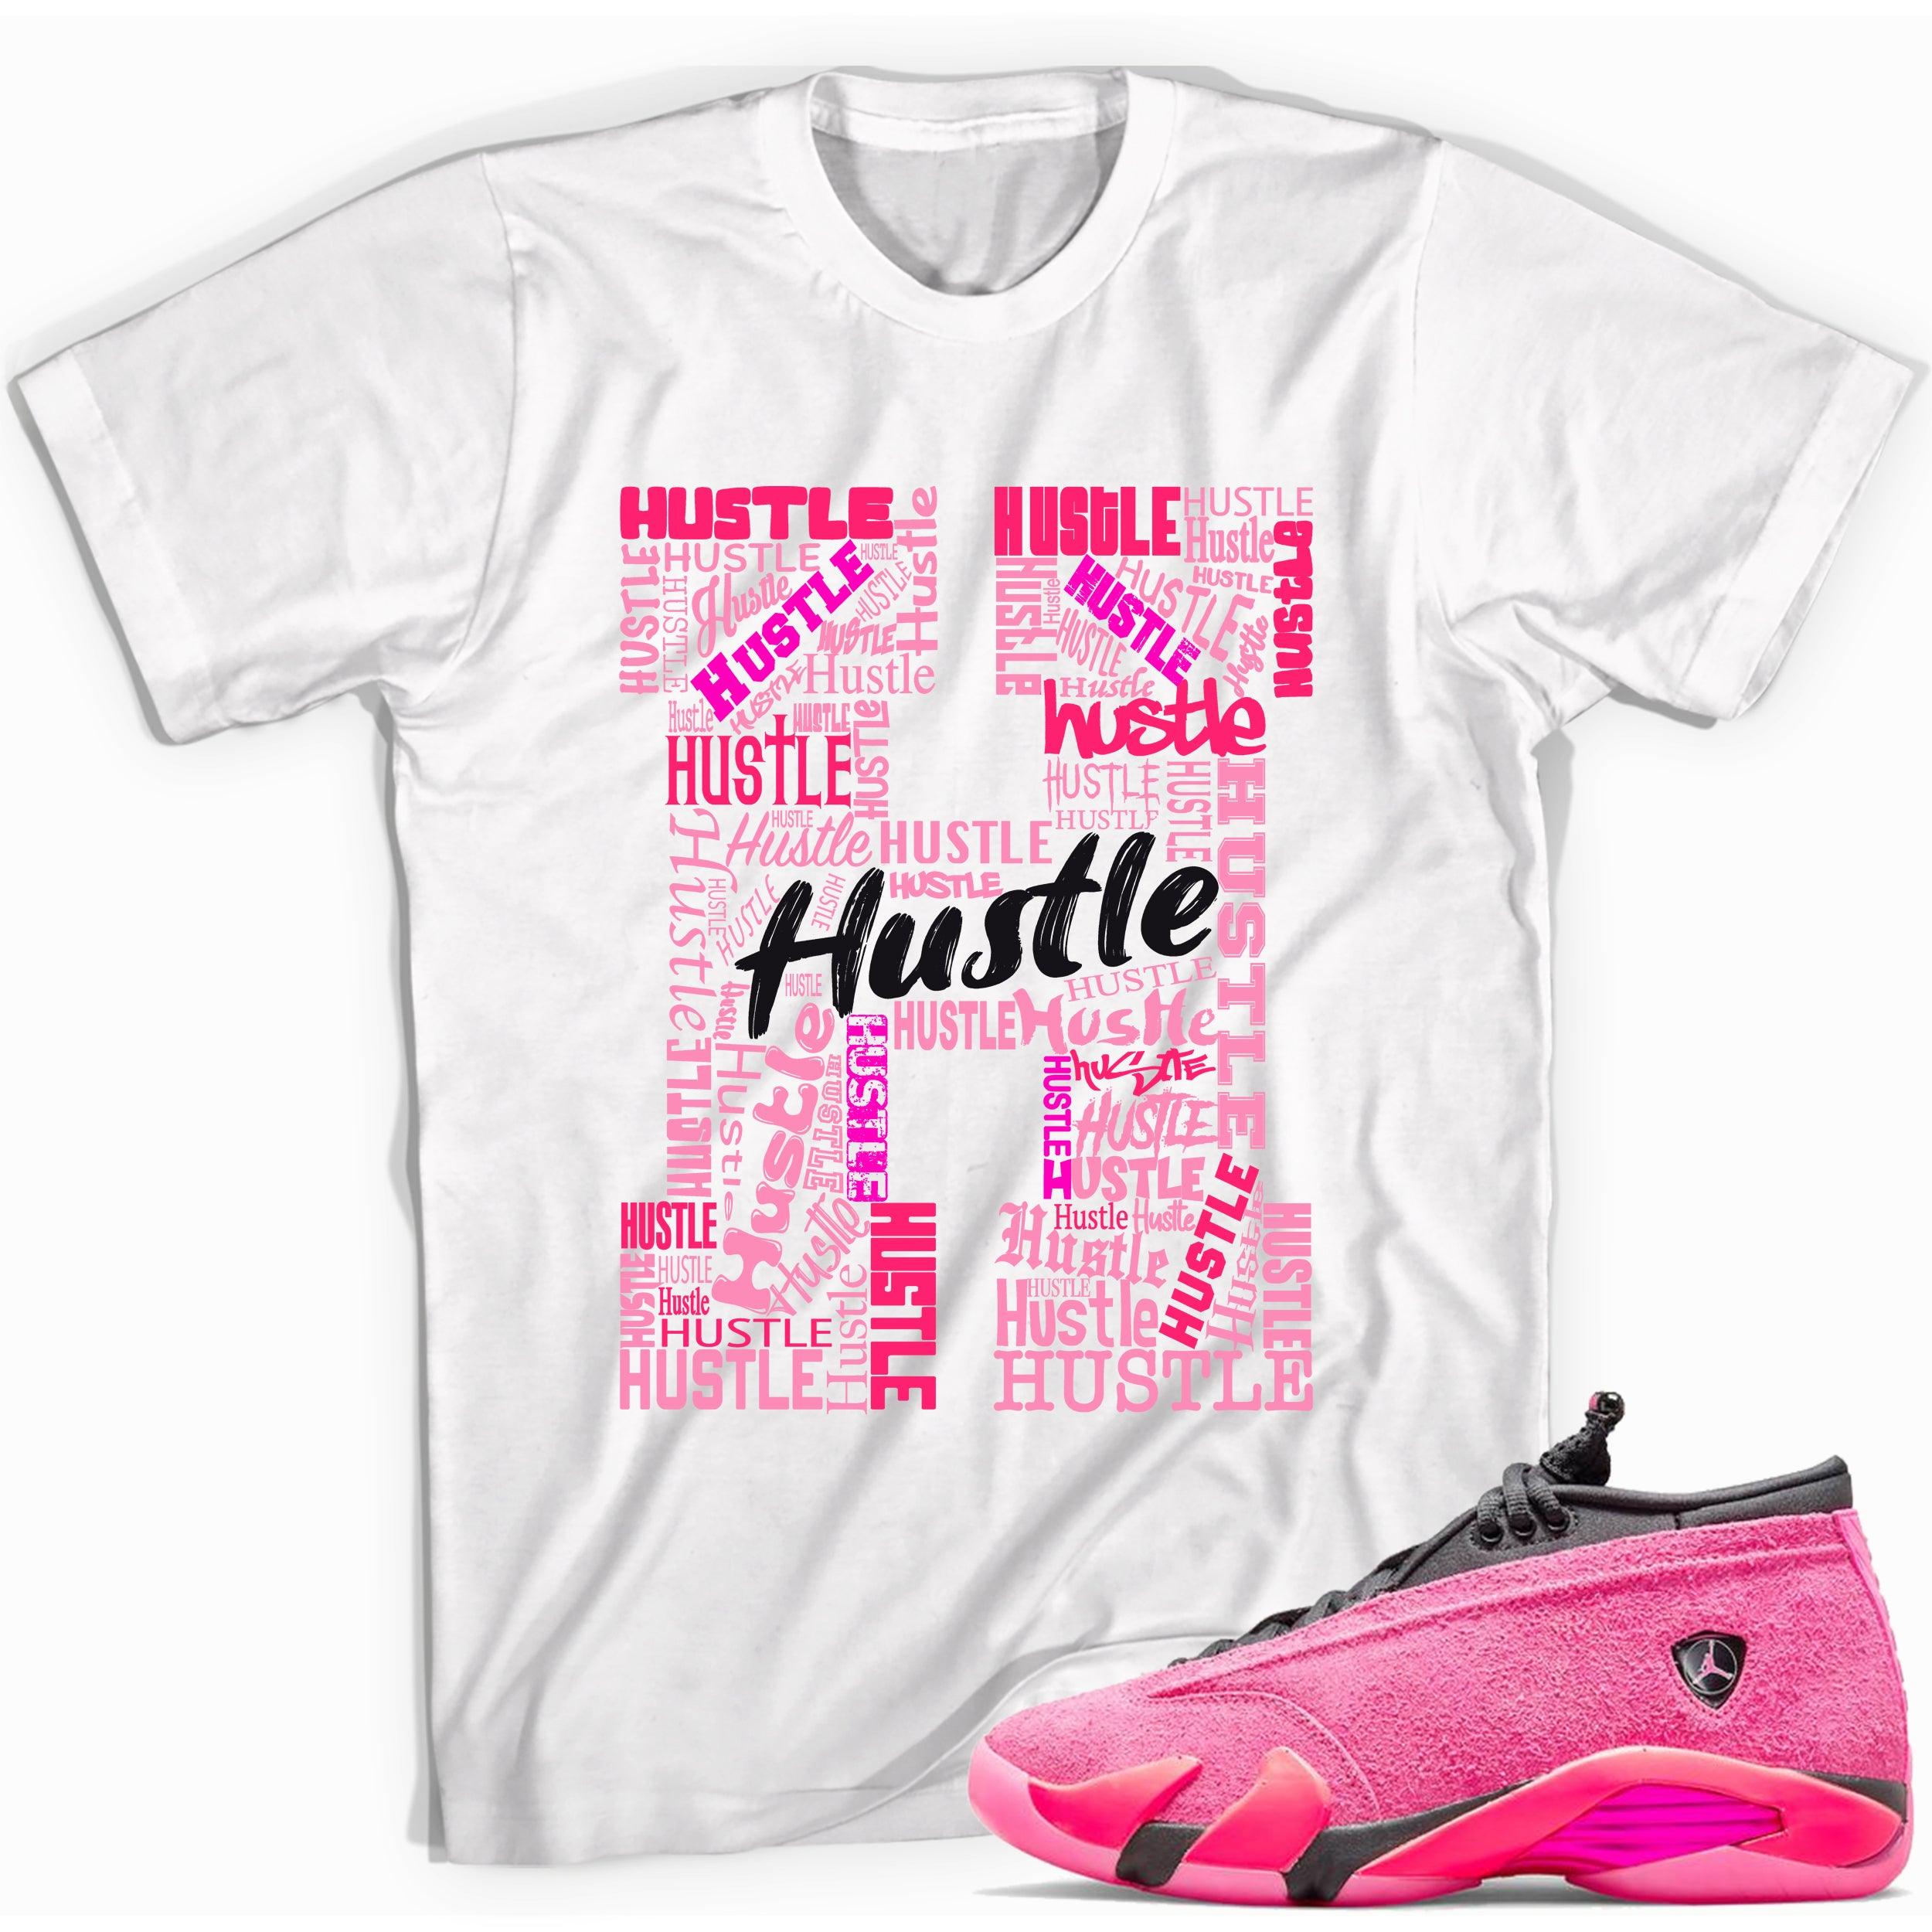 H For Hustle Shirt Jordan 14s Low Shocking Pink photo